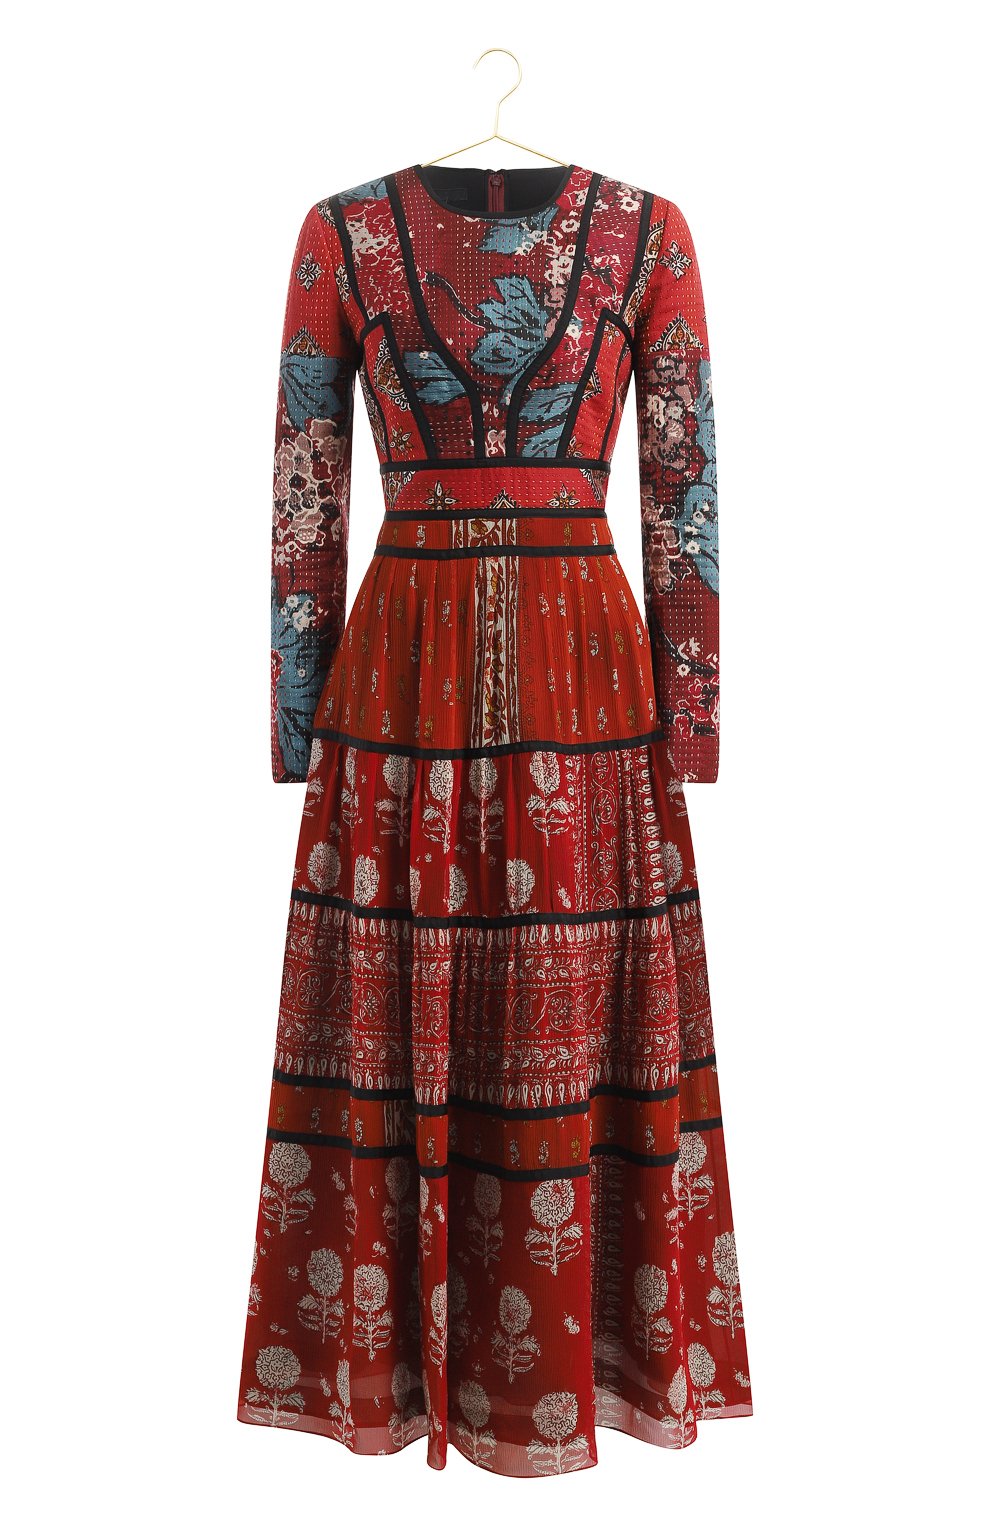 Шелковое платье | Burberry | Красный - 1